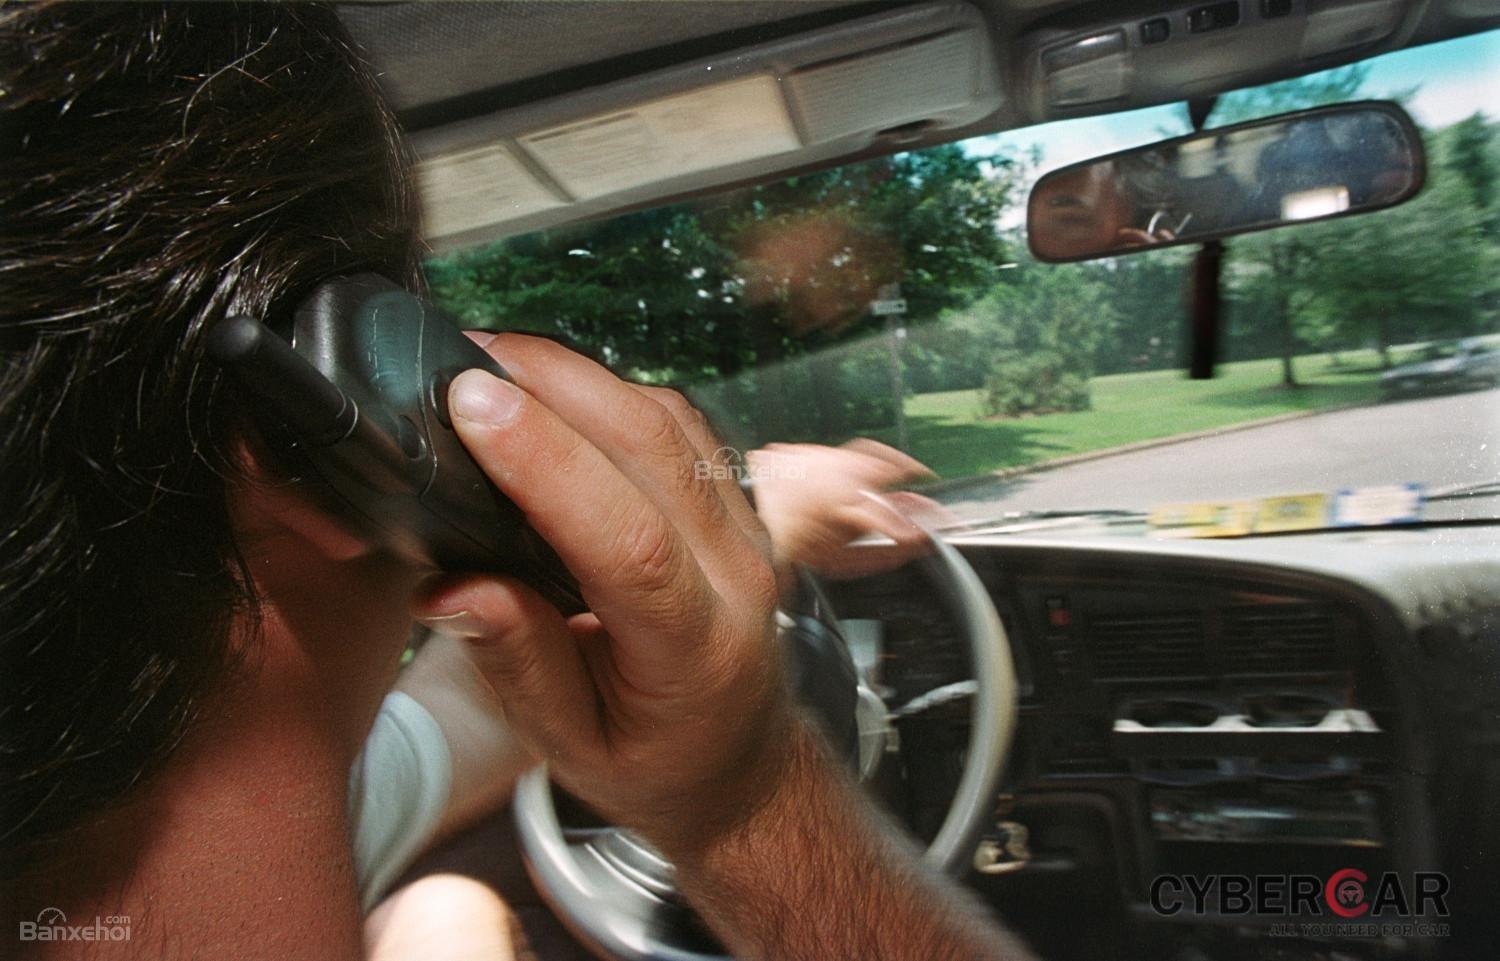 7 thói quen gây xao nhãng khi lái xe ô tô: Nghe điện thoại z